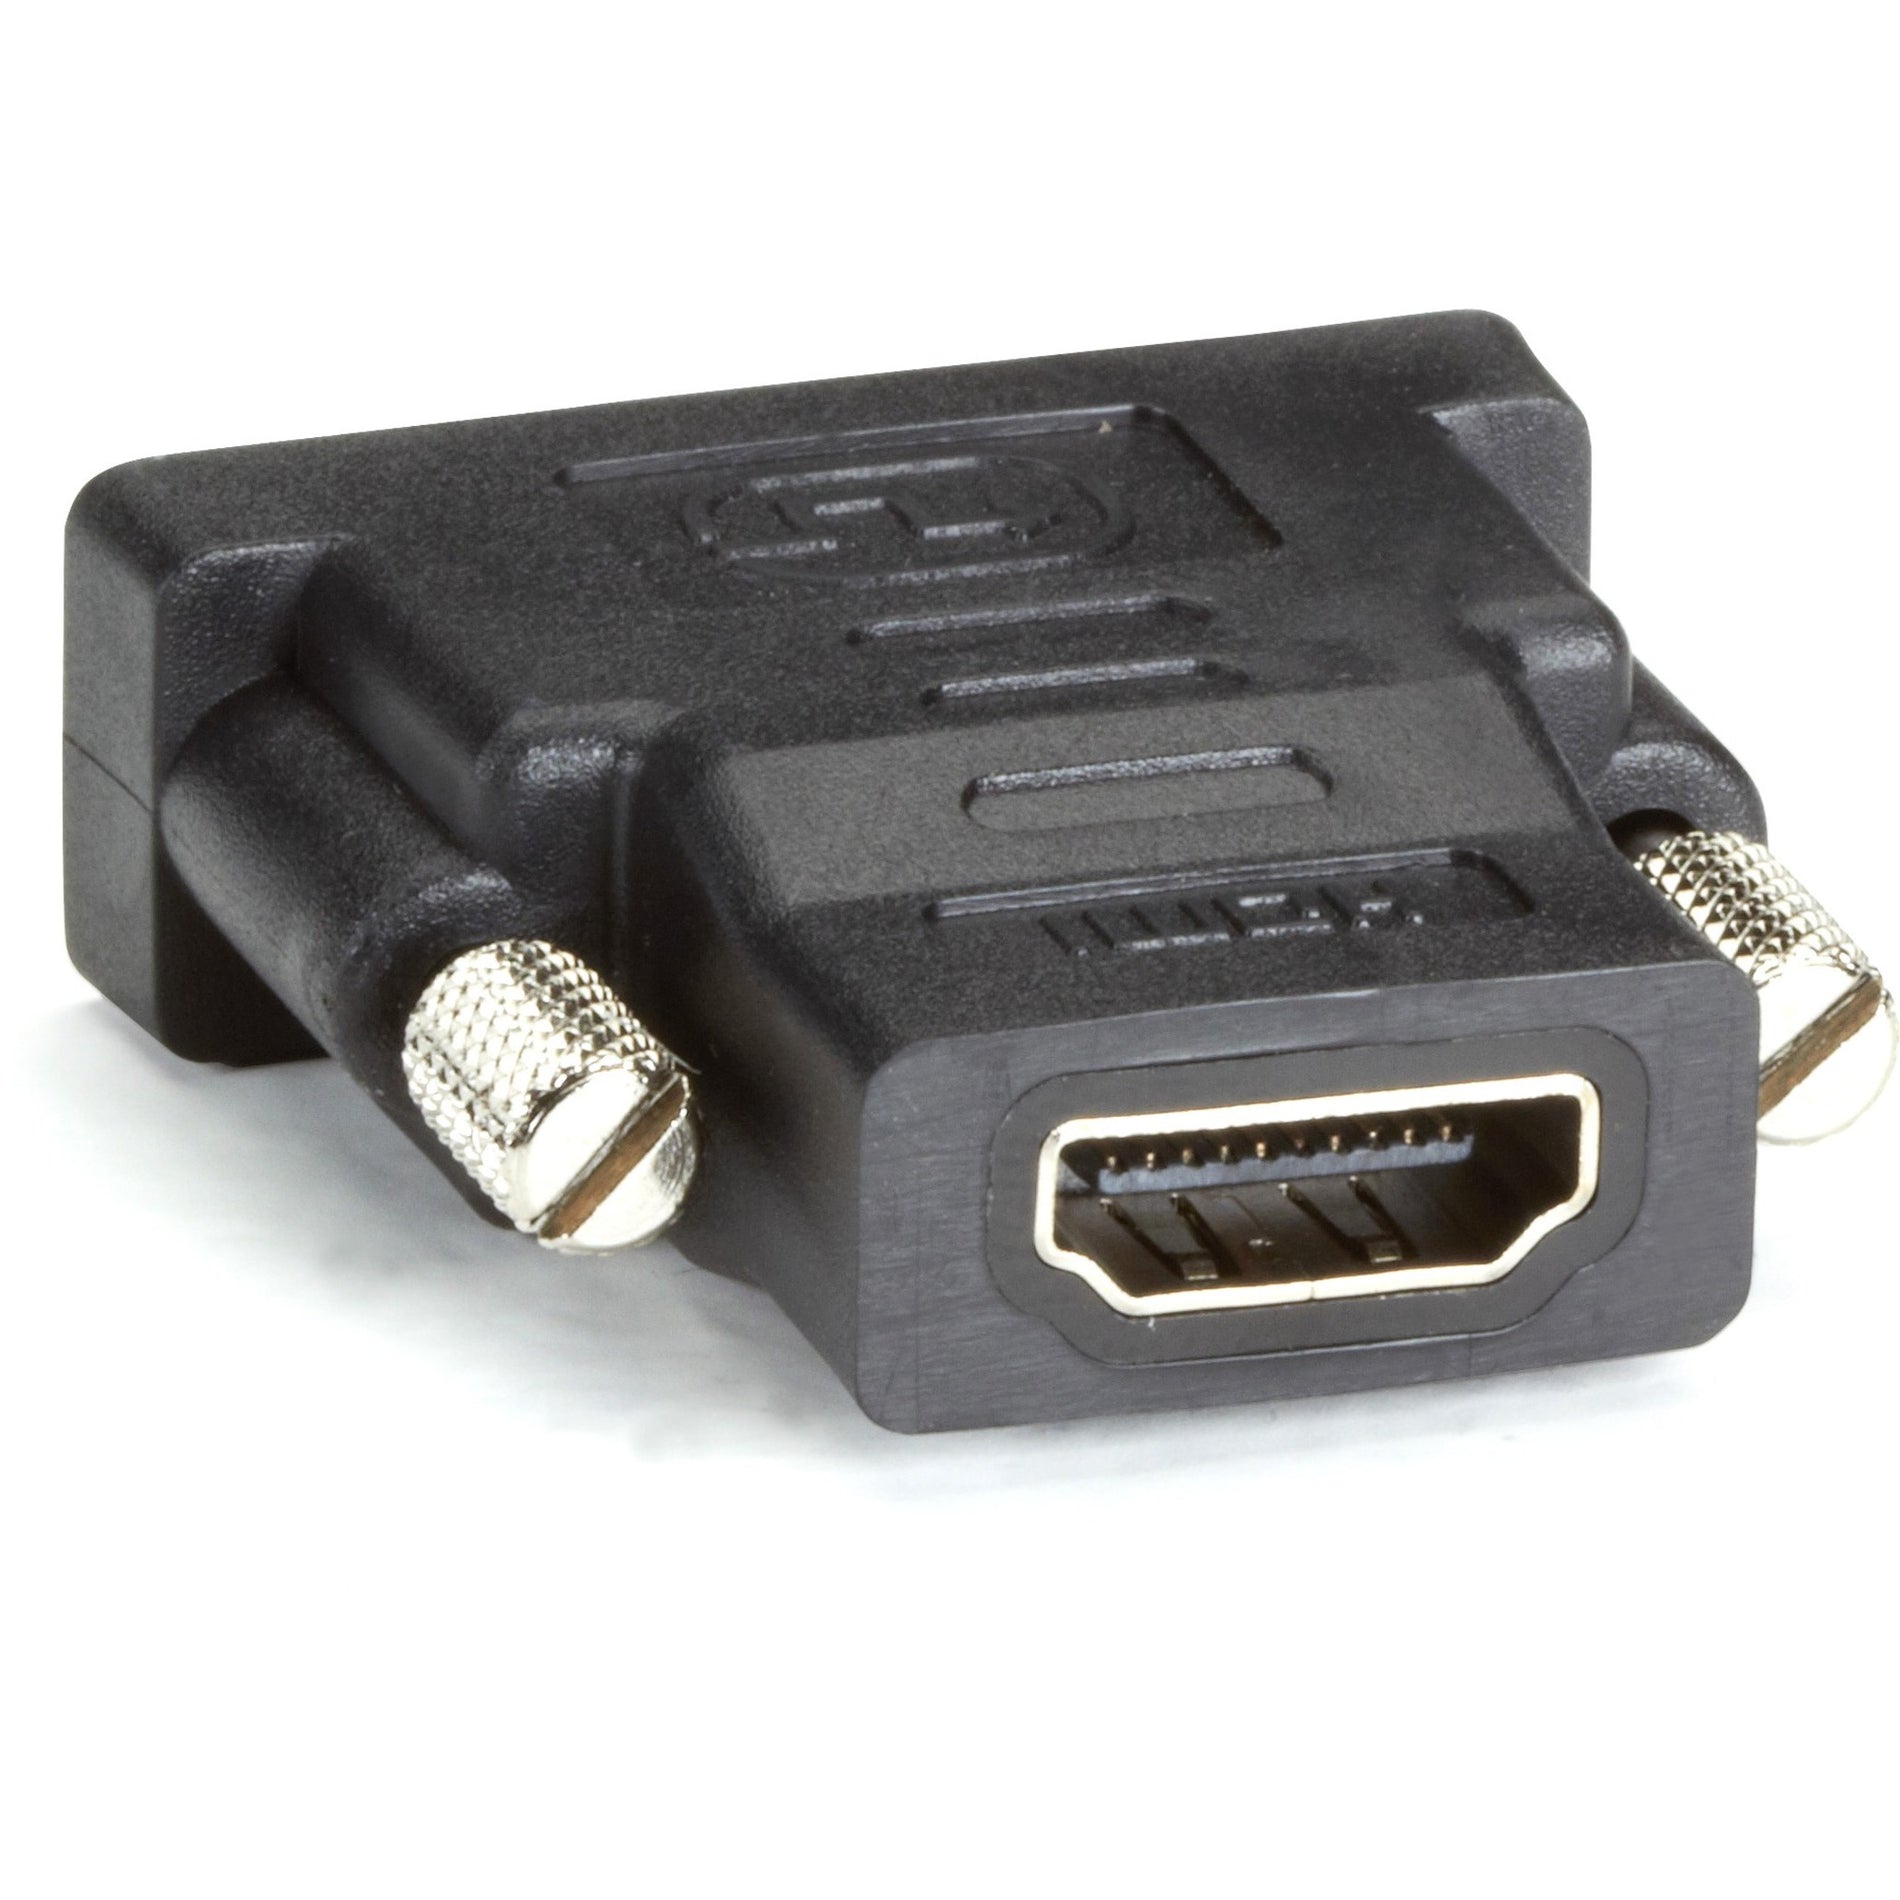 Caja Negra Adaptador de HDMI a DVI-D FA795-R2 Moldeado Niquelado Garantía de por Vida